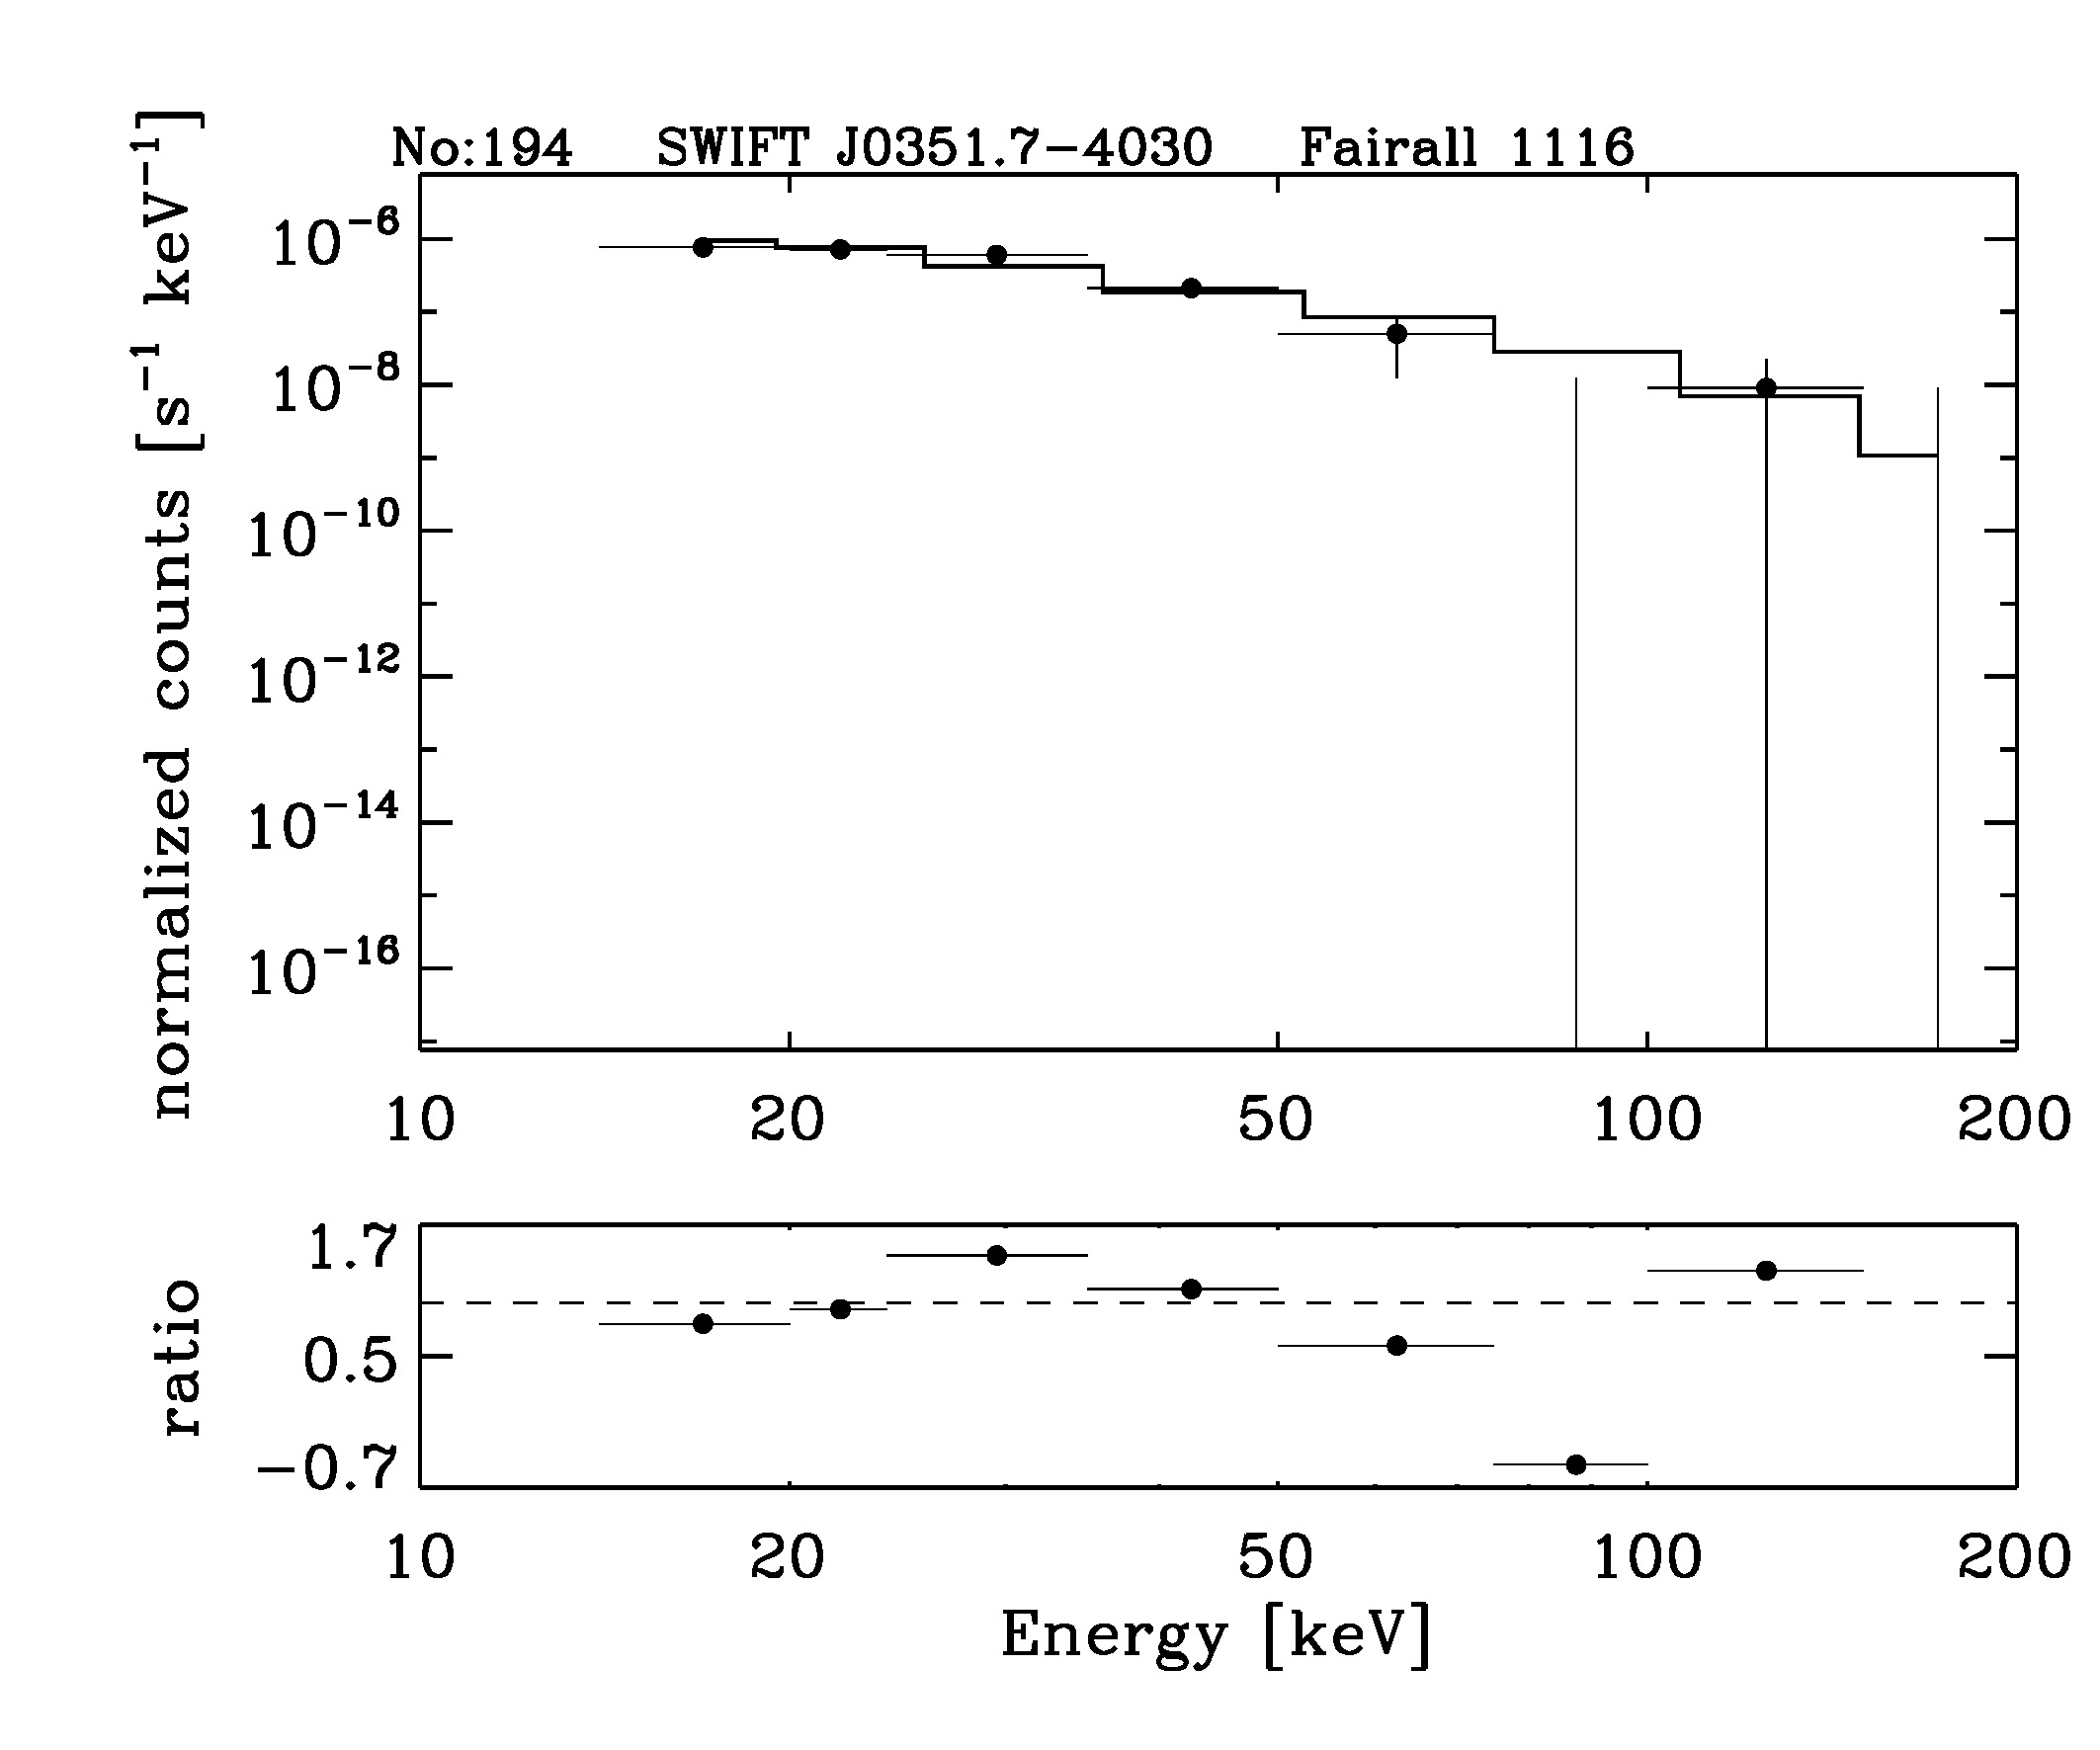 BAT Spectrum for SWIFT J0351.7-4030